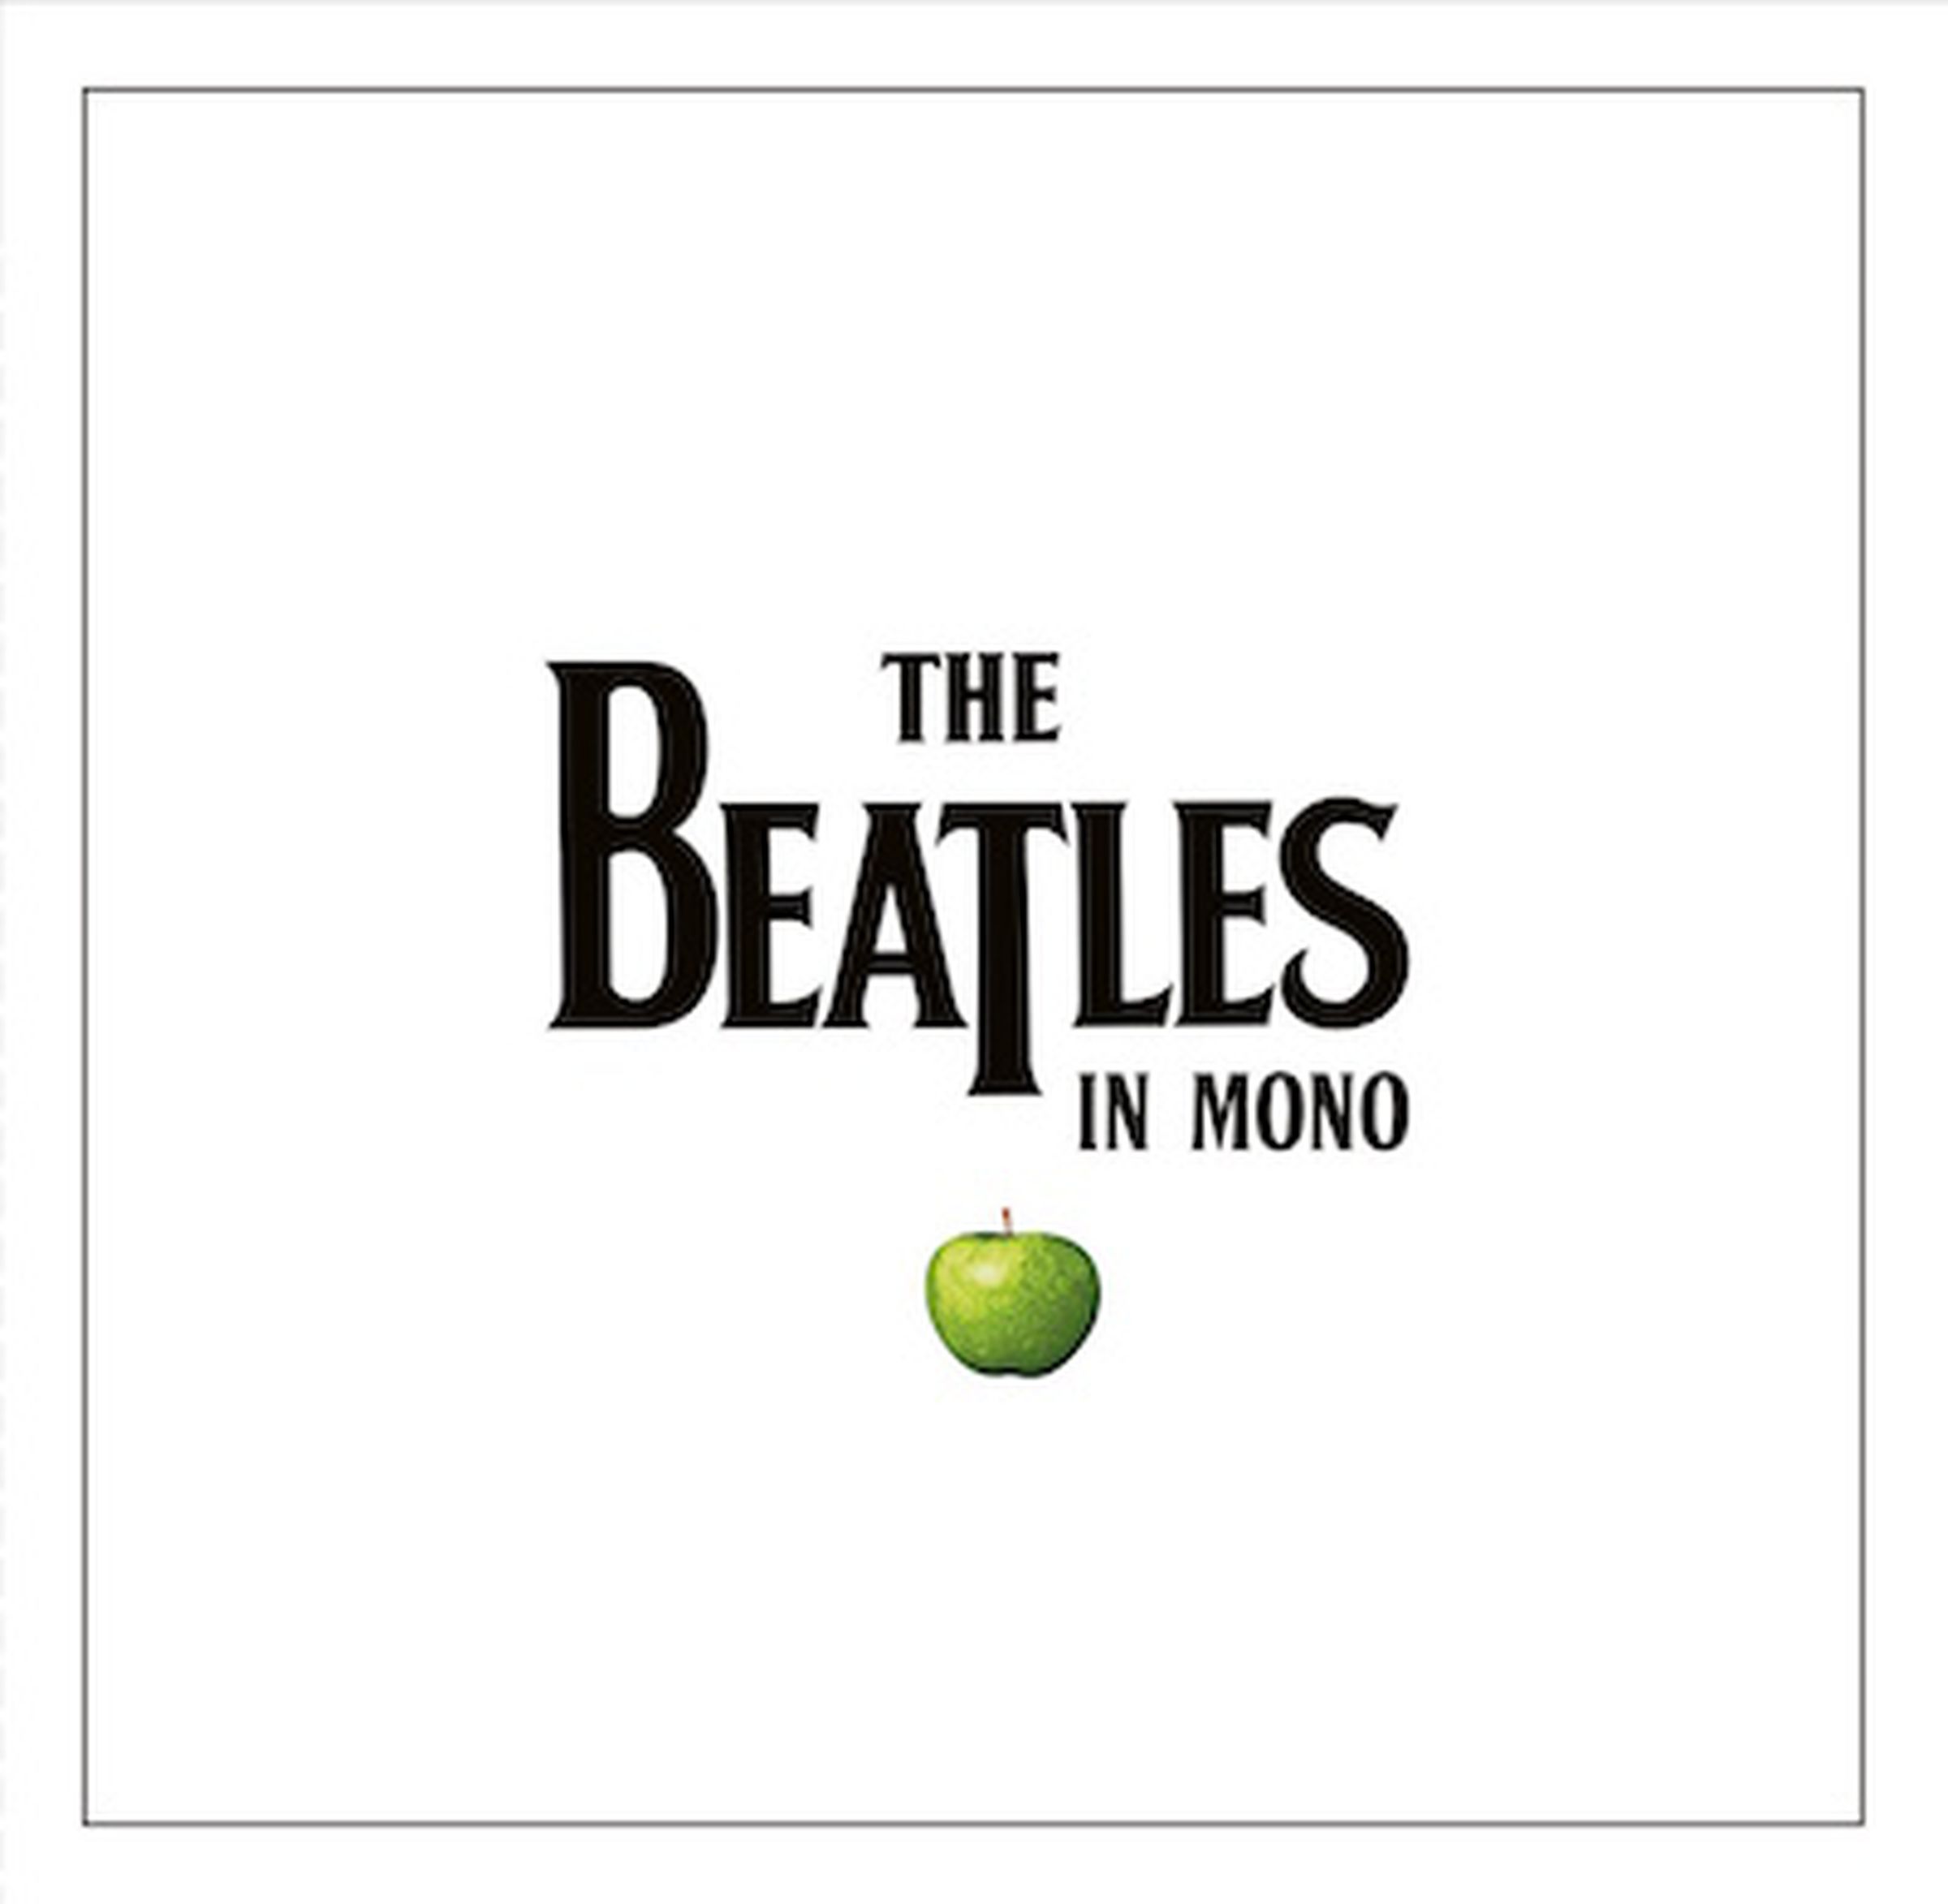 The Beatles mono